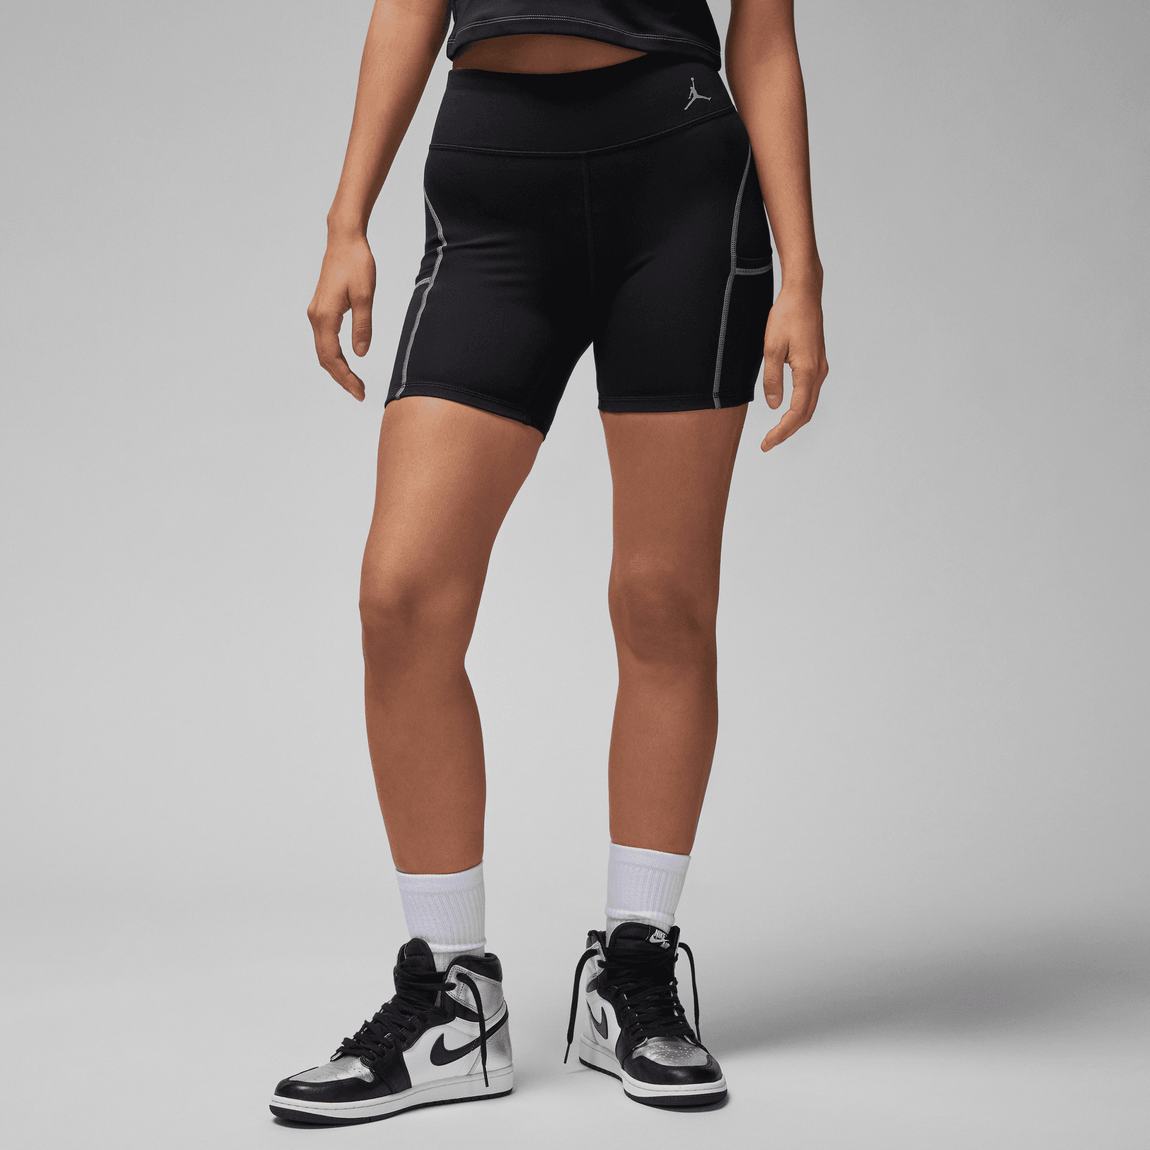 Women's Jordan Sport Short Leggings (Black/Stealth) - Women's Jordan Sport Short Leggings (Black/Stealth) - 